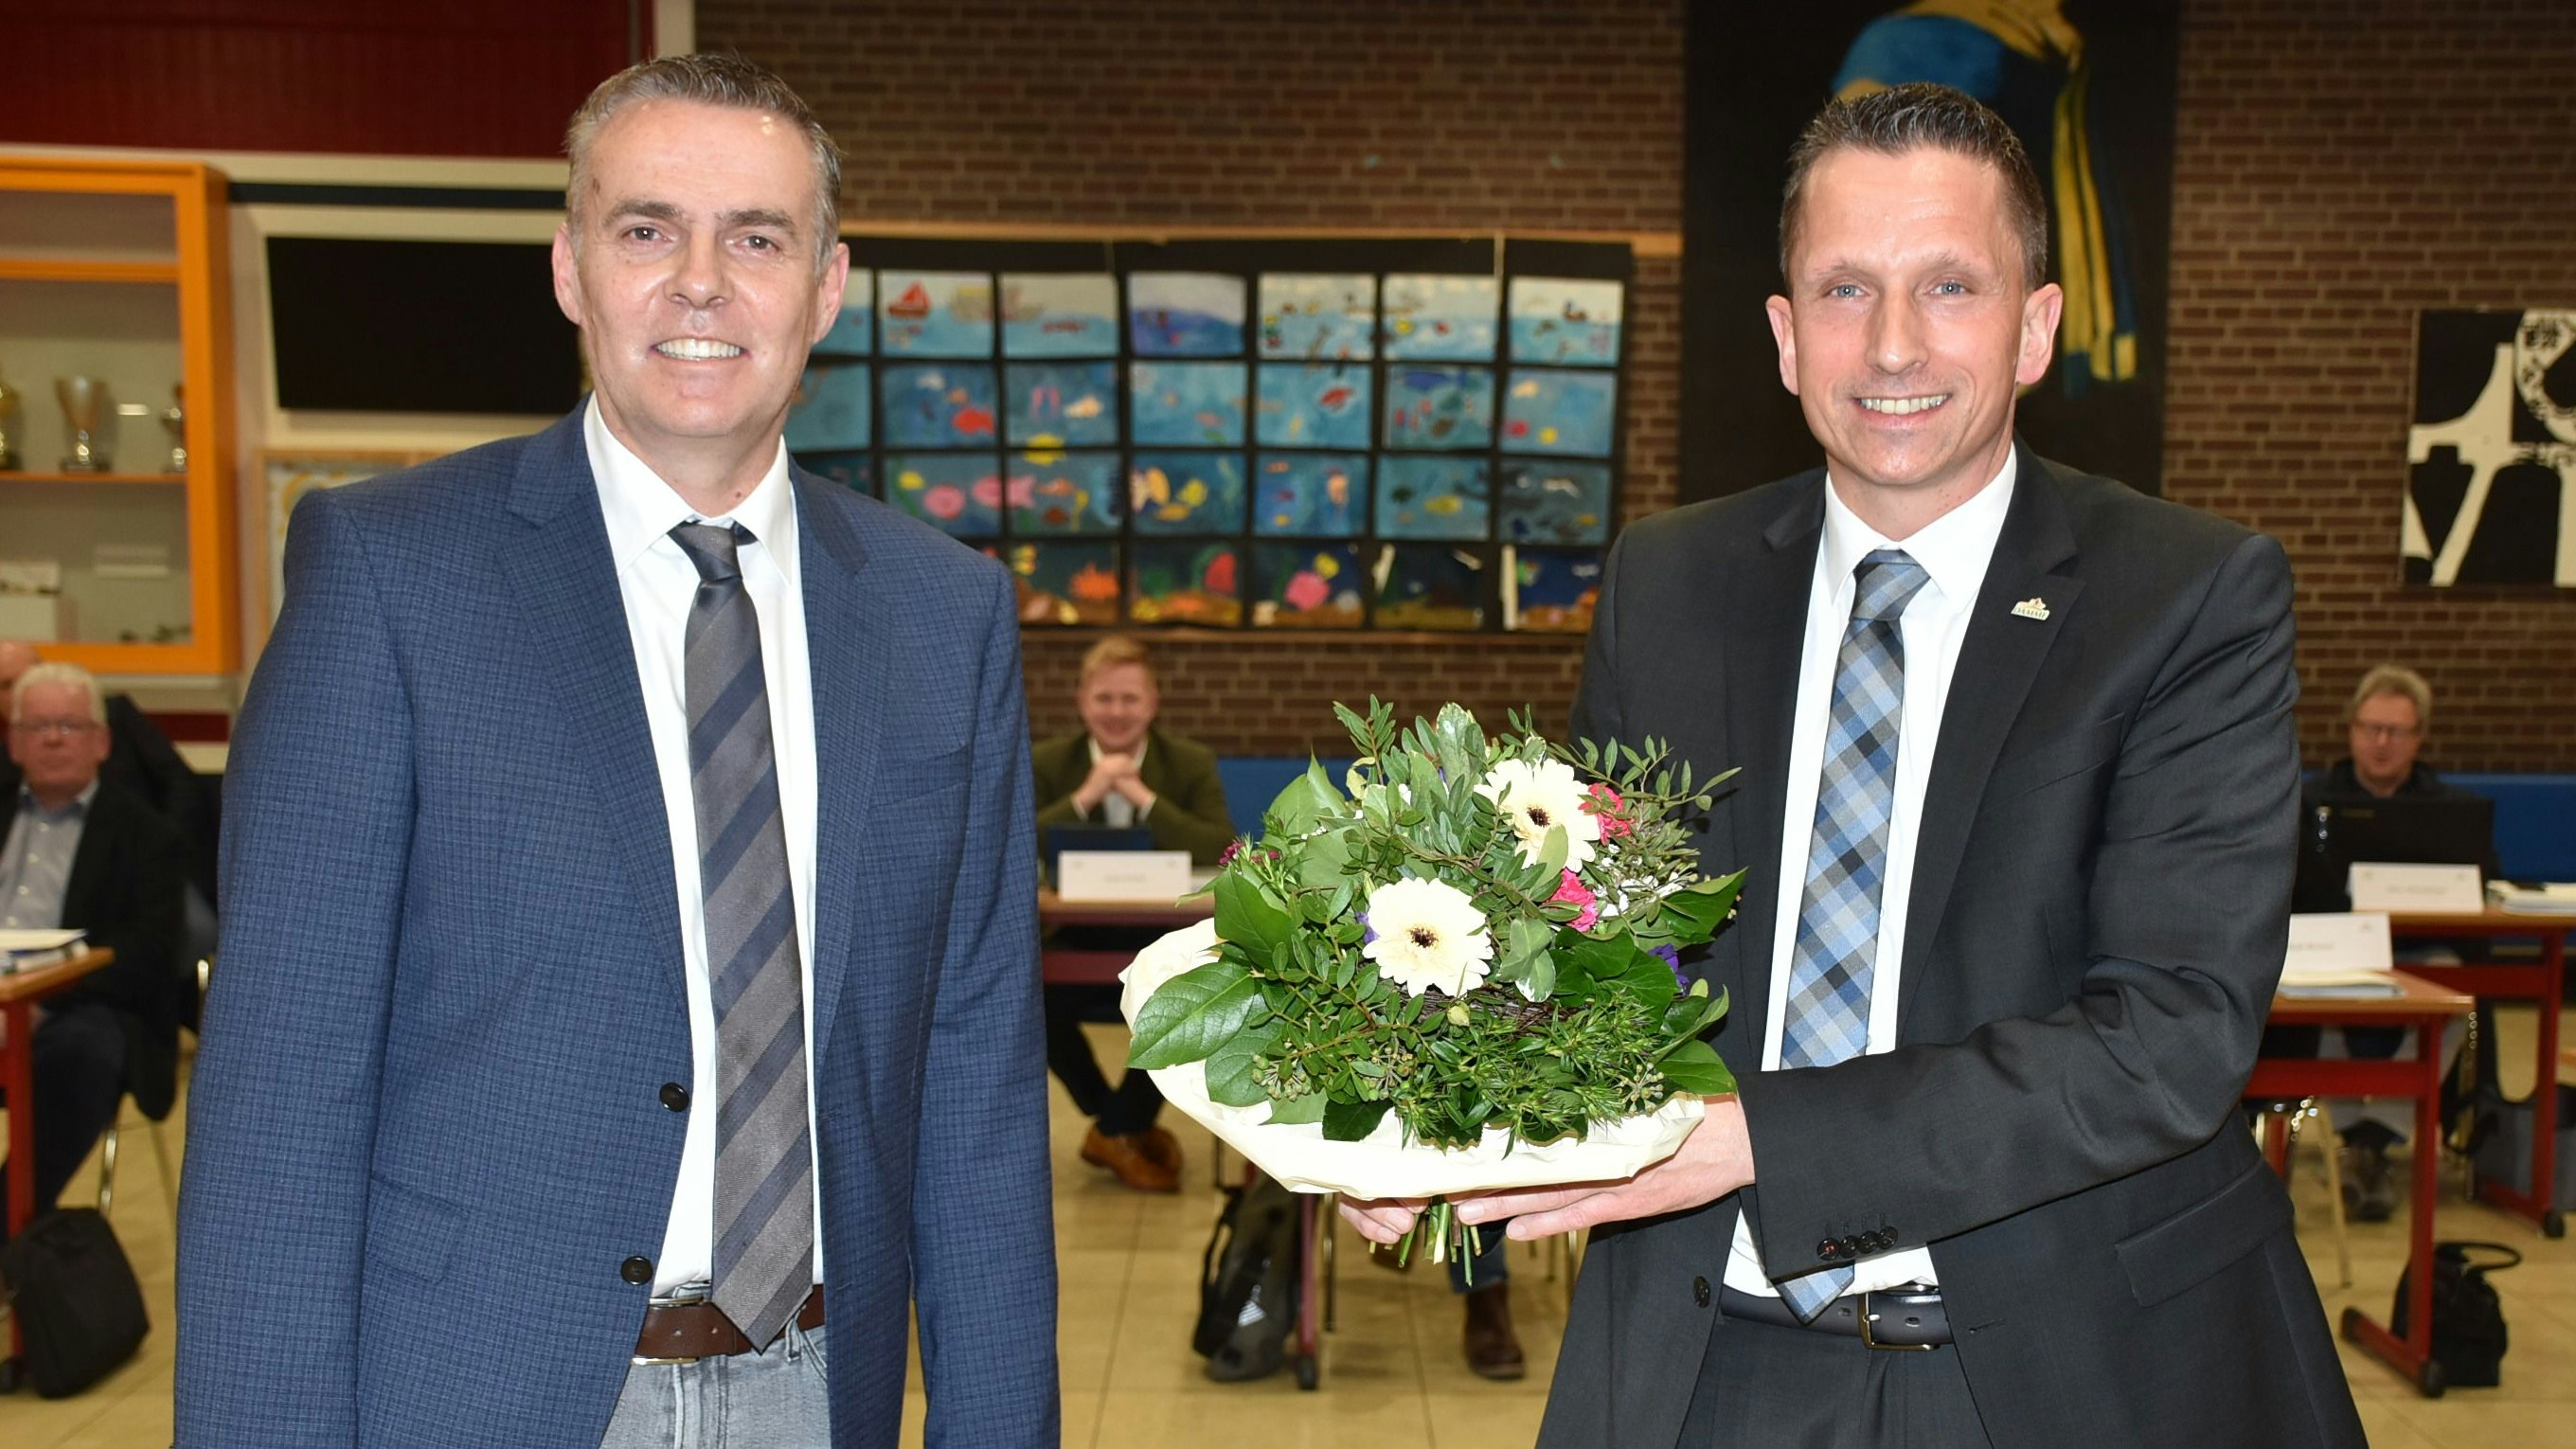 Blumen nach der Wahl: Mike Otte (rechts) gratulierte seinem designierten Allgemeinen Vertreter Christoph Bornhorst. Foto: Lammert